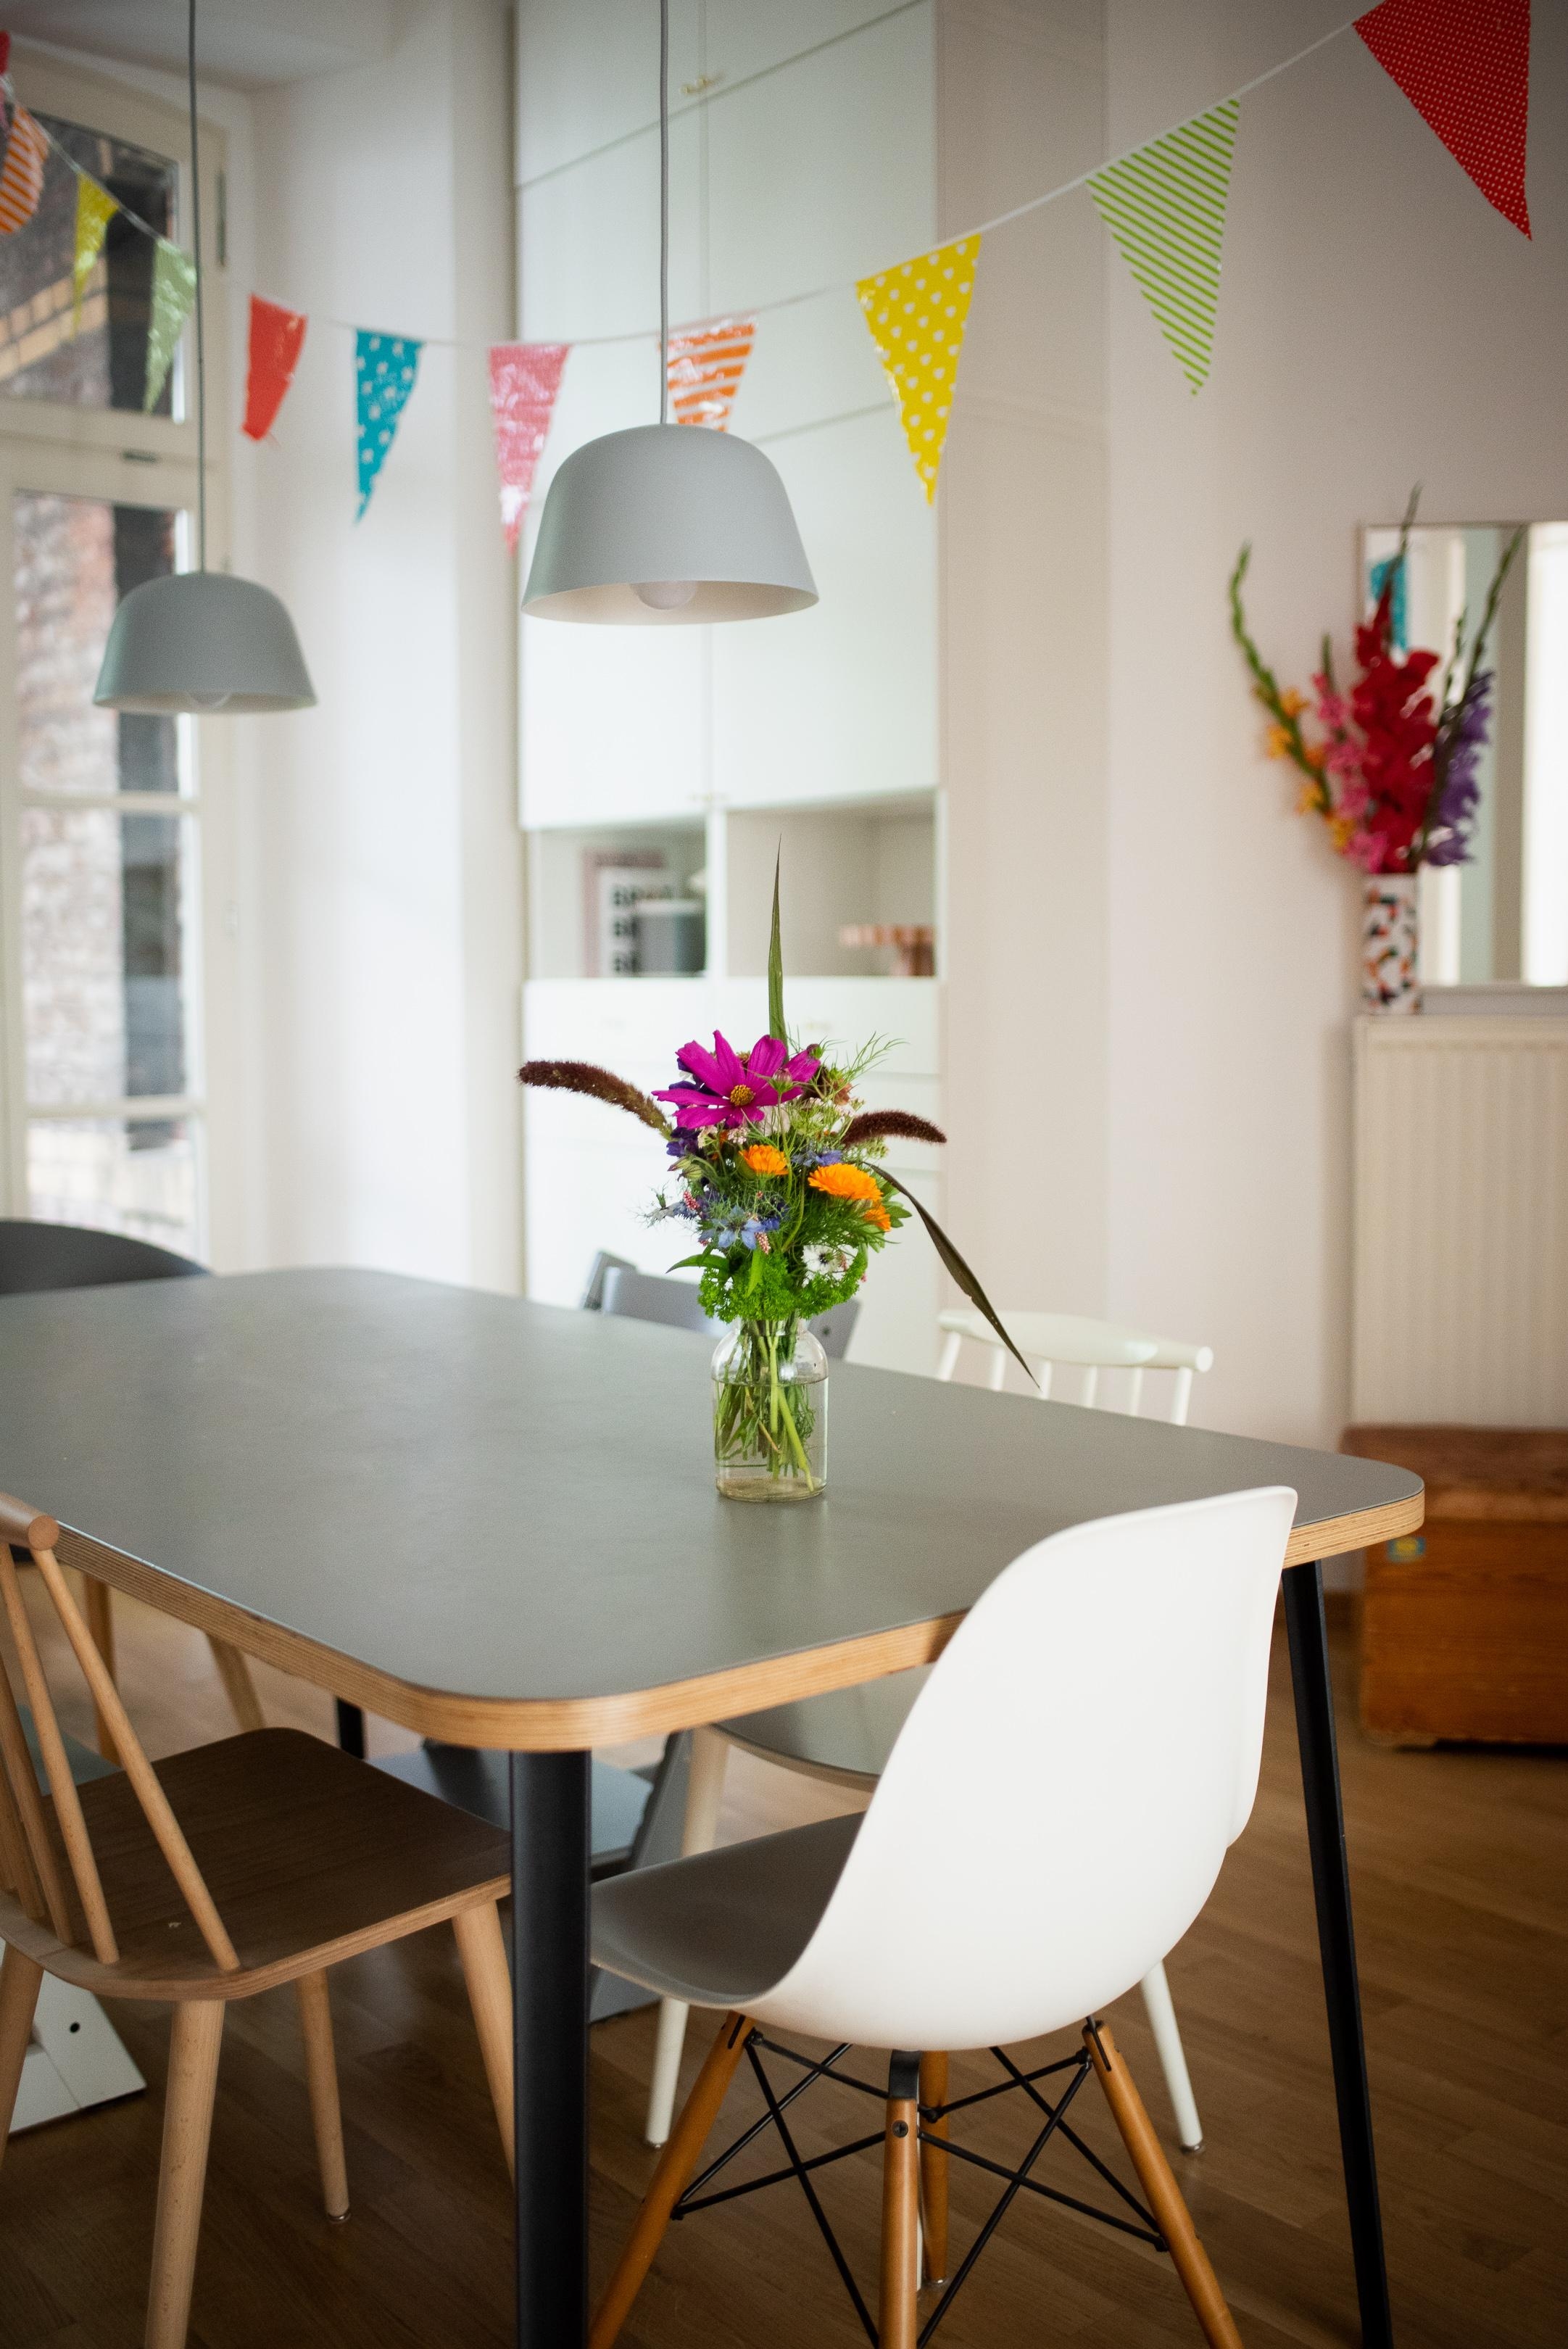 Nach dem Geburtstag ist vor dem Geburtstag 🎈 #küche #wohnküche #fridayflowers #colourfulhome #esstisch #deko